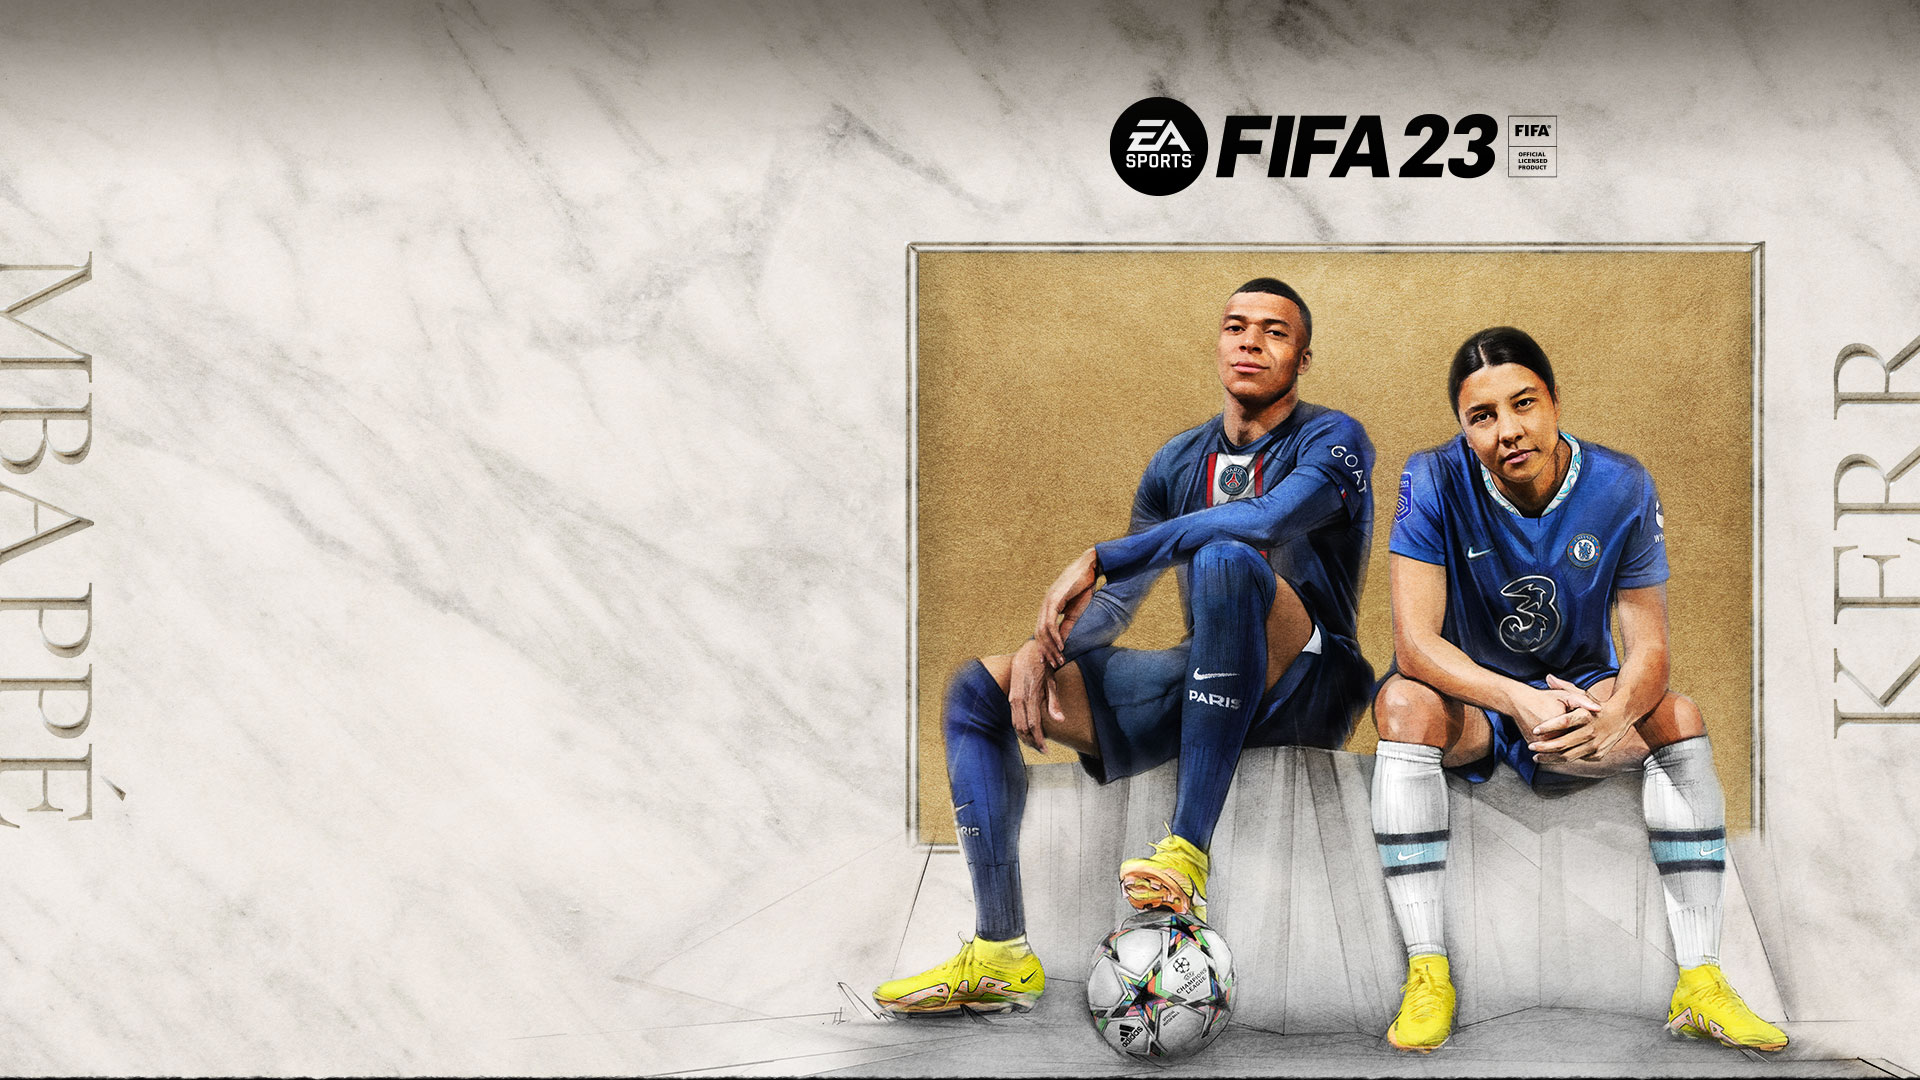 EA SPORTS FIFA 23, offiziell lizenziertes Produkt der FIFA, Mbappe, Kerr, zwei Spieler*innen sitzen auf einer mit Stoff bezogenen Bank vor einer Korkplatte.